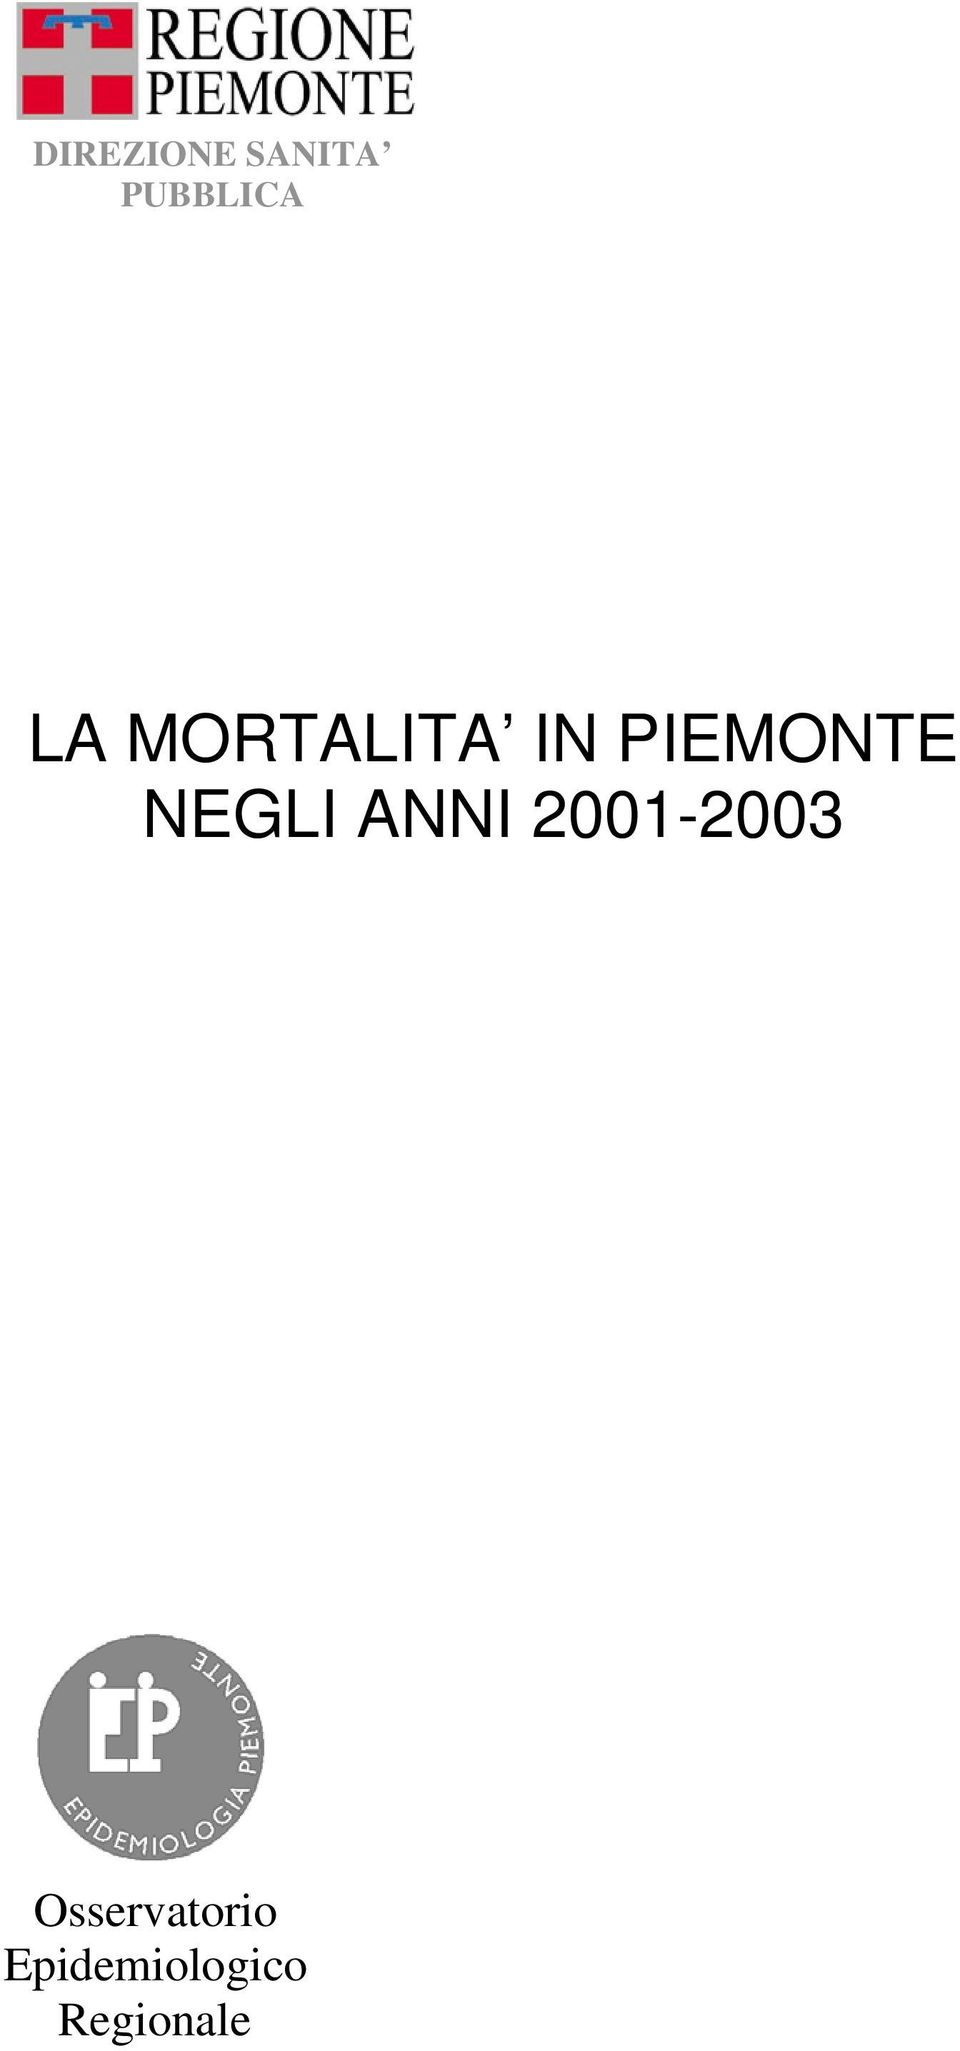 NEGLI ANNI 2001-2003